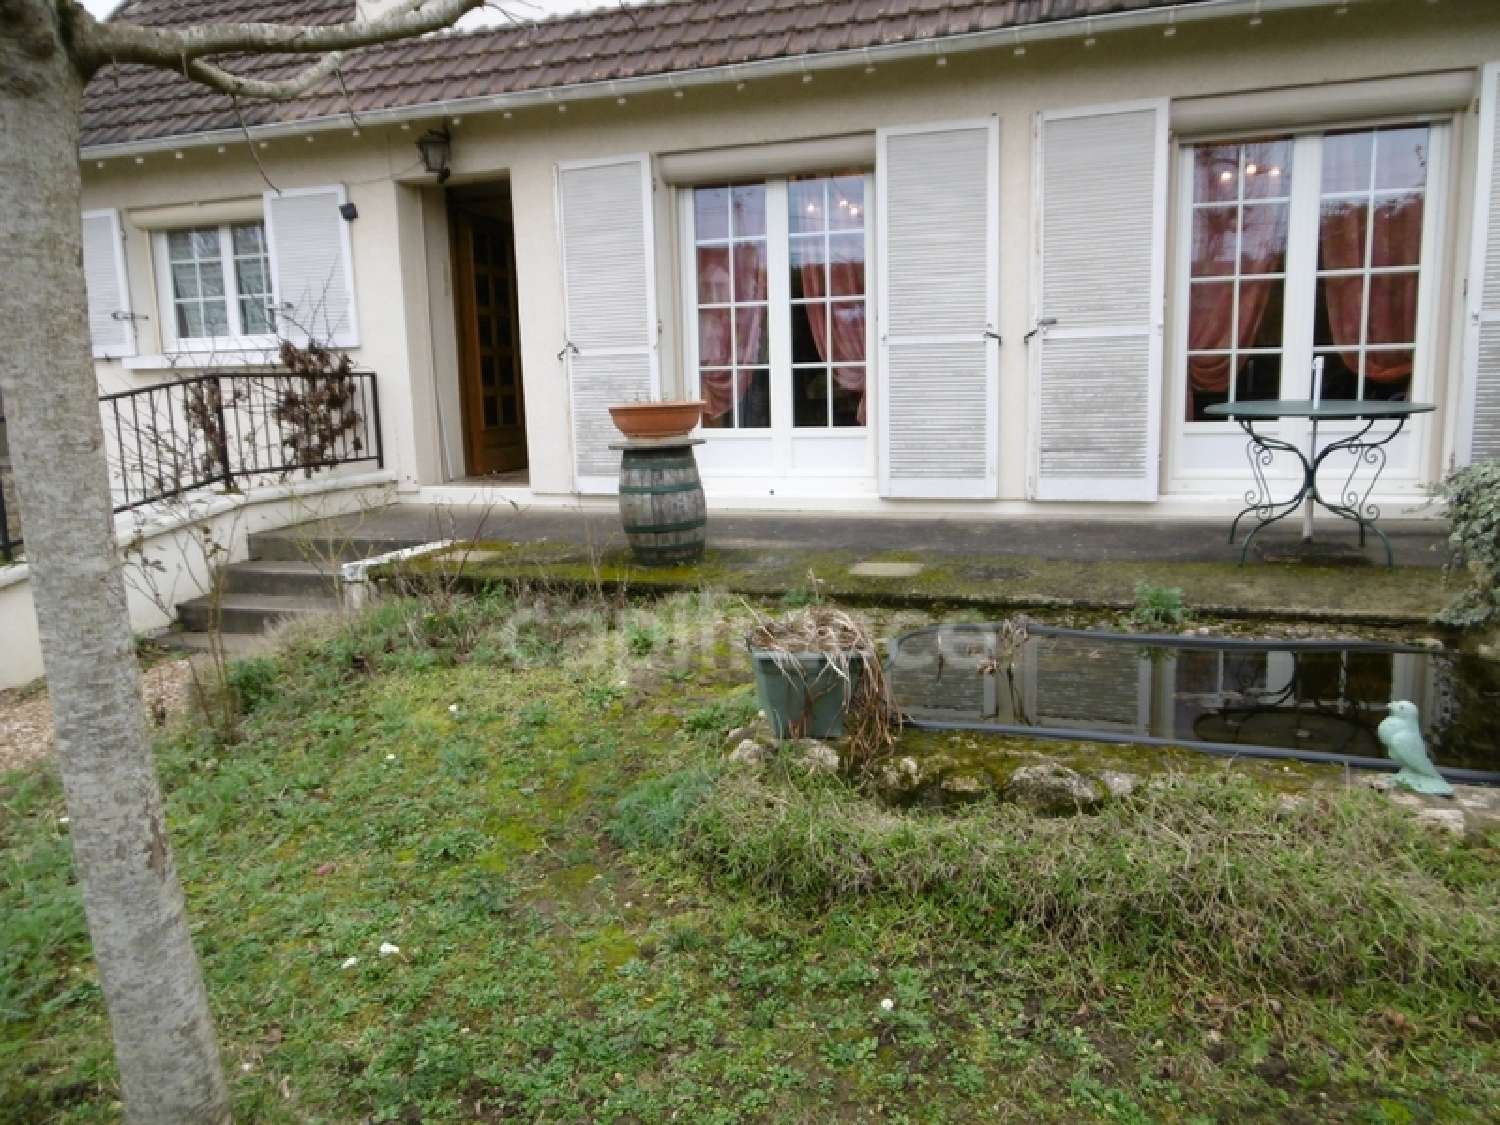  à vendre maison Saint-Pierre-lès-Nemours Seine-et-Marne 4